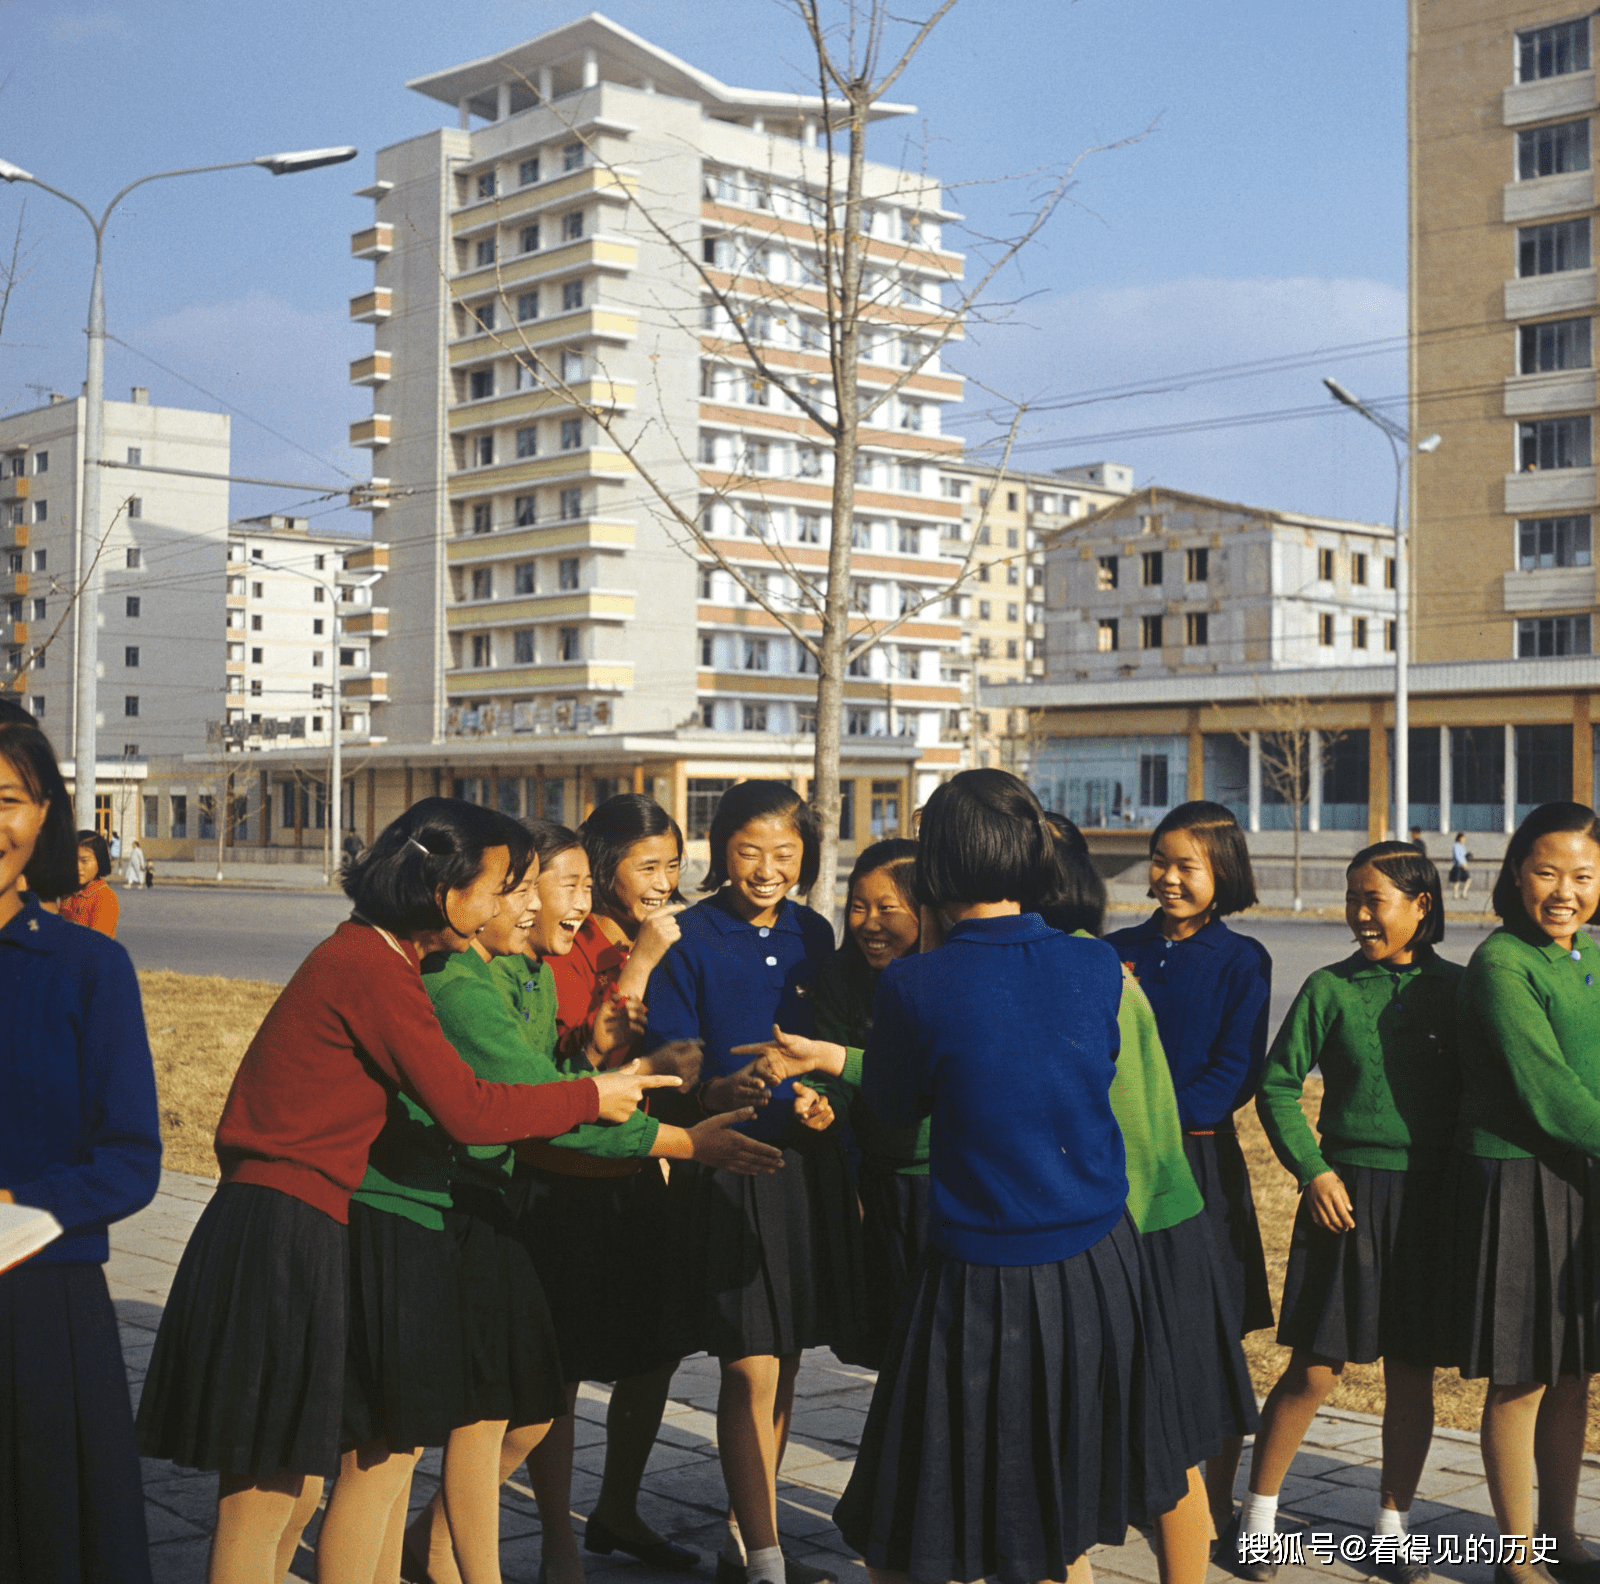 老照片 1971年的朝鲜女学生 笑脸写在她们的脸上